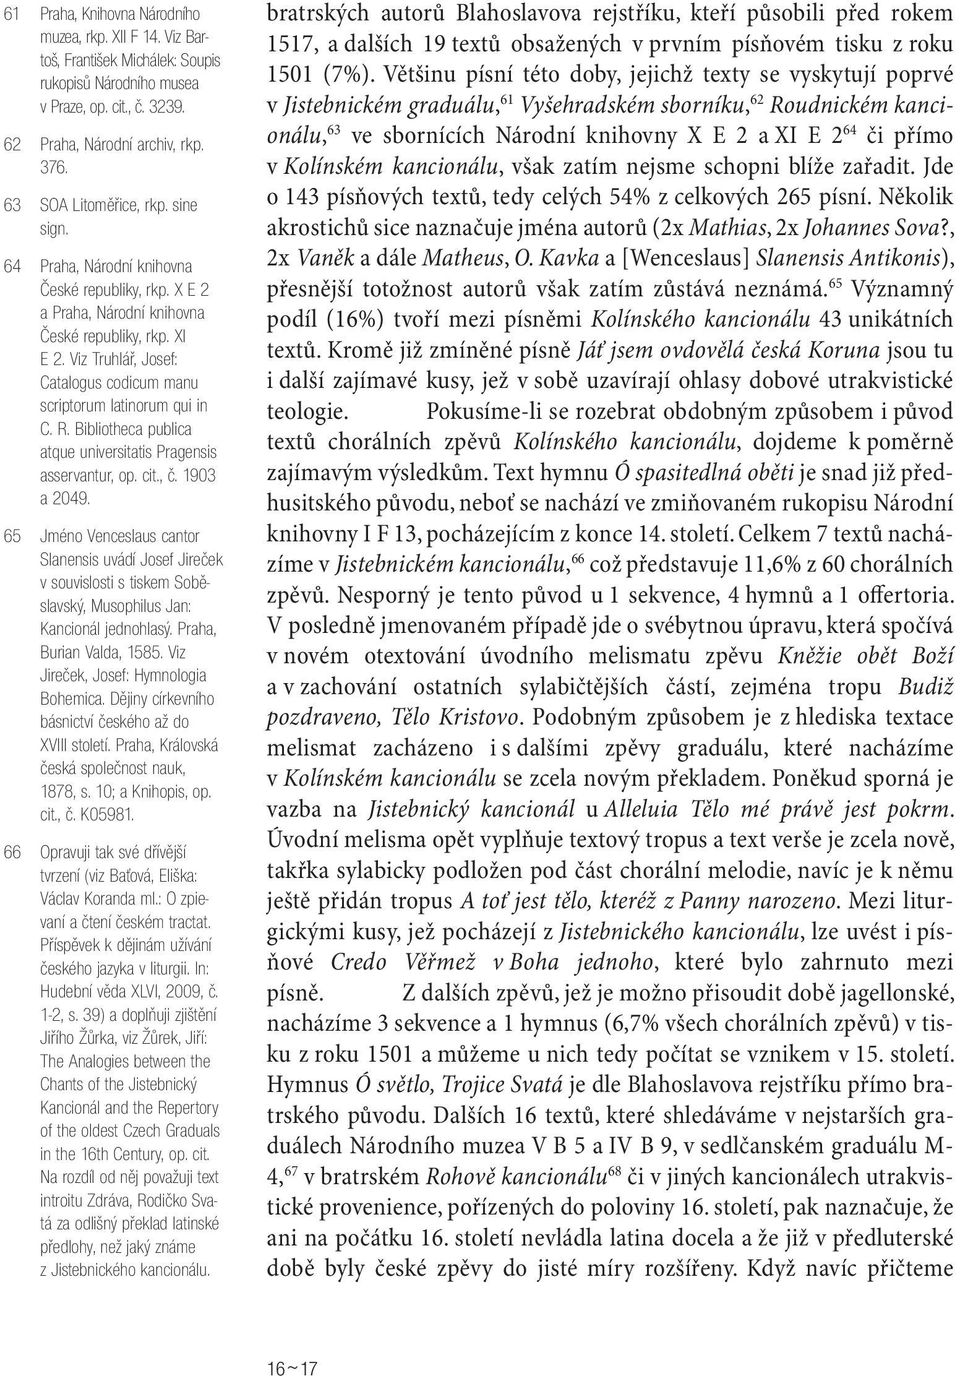 Viz Truhlář, Josef: Catalogus codicum manu scriptorum latinorum qui in C. R. Bibliotheca publica atque universitatis Pragensis asservantur, op. cit., č. 1903 a 2049.